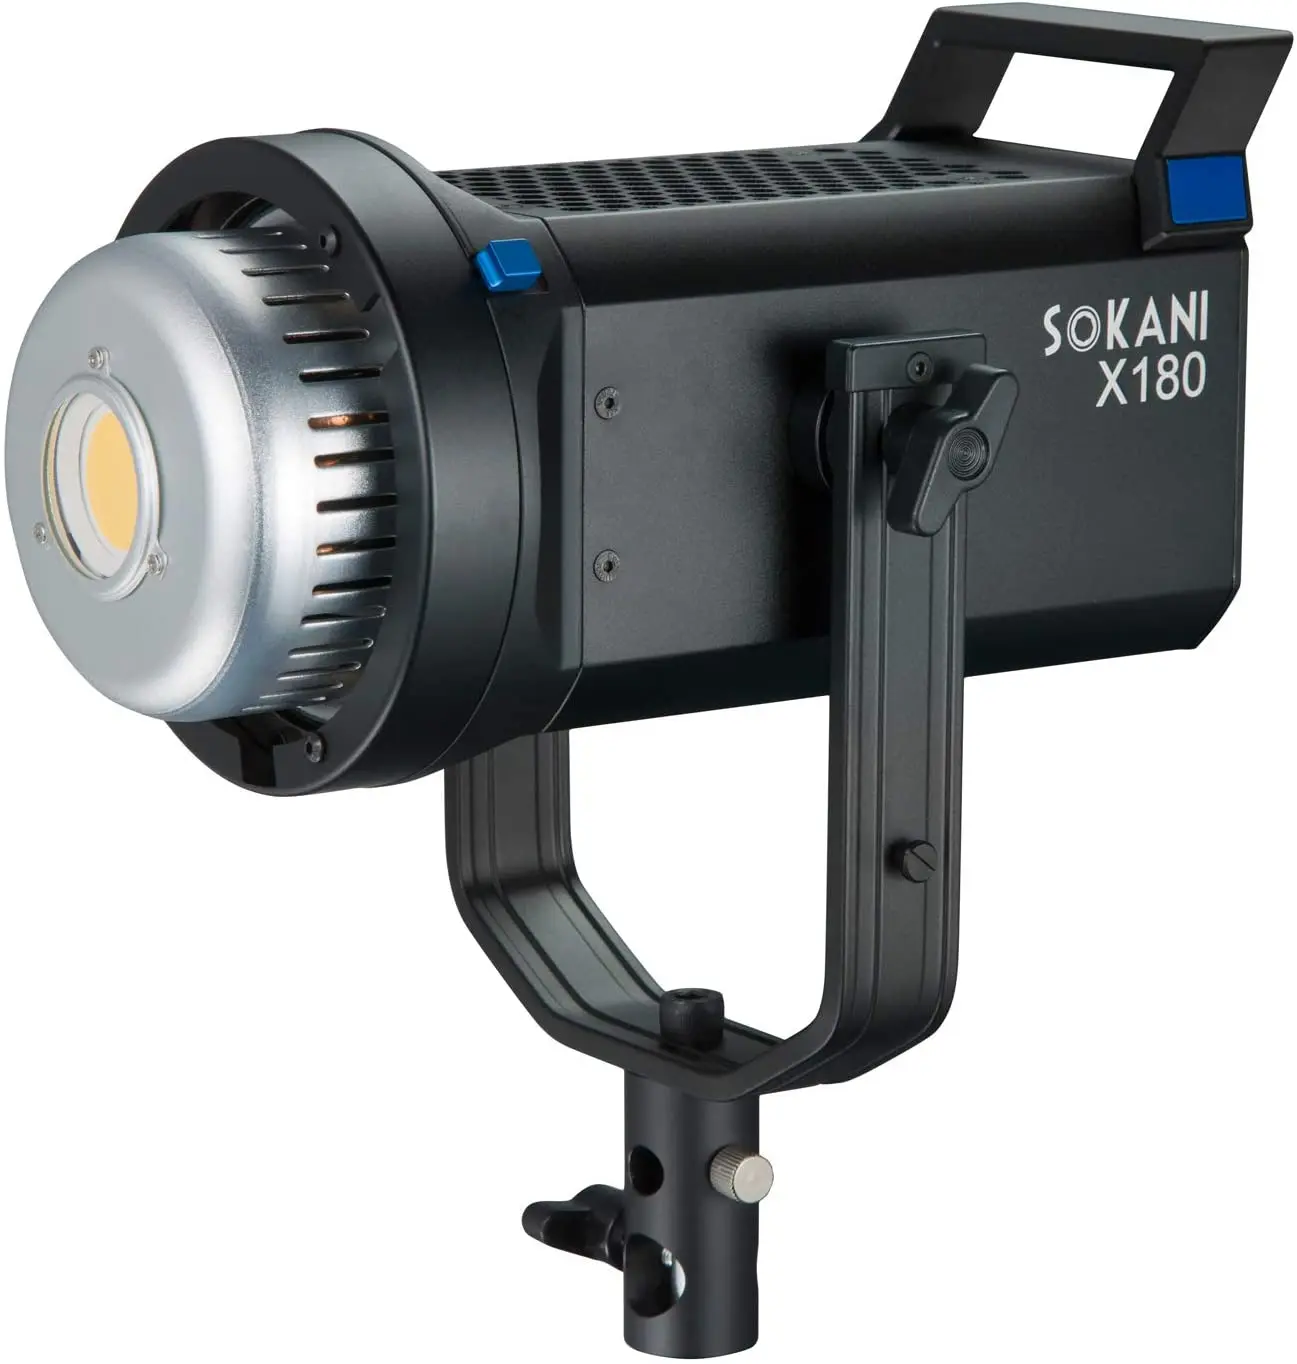 Sokani X180 LEDライト、180W 5600K±200K ビデオ カメラ ライ日光の